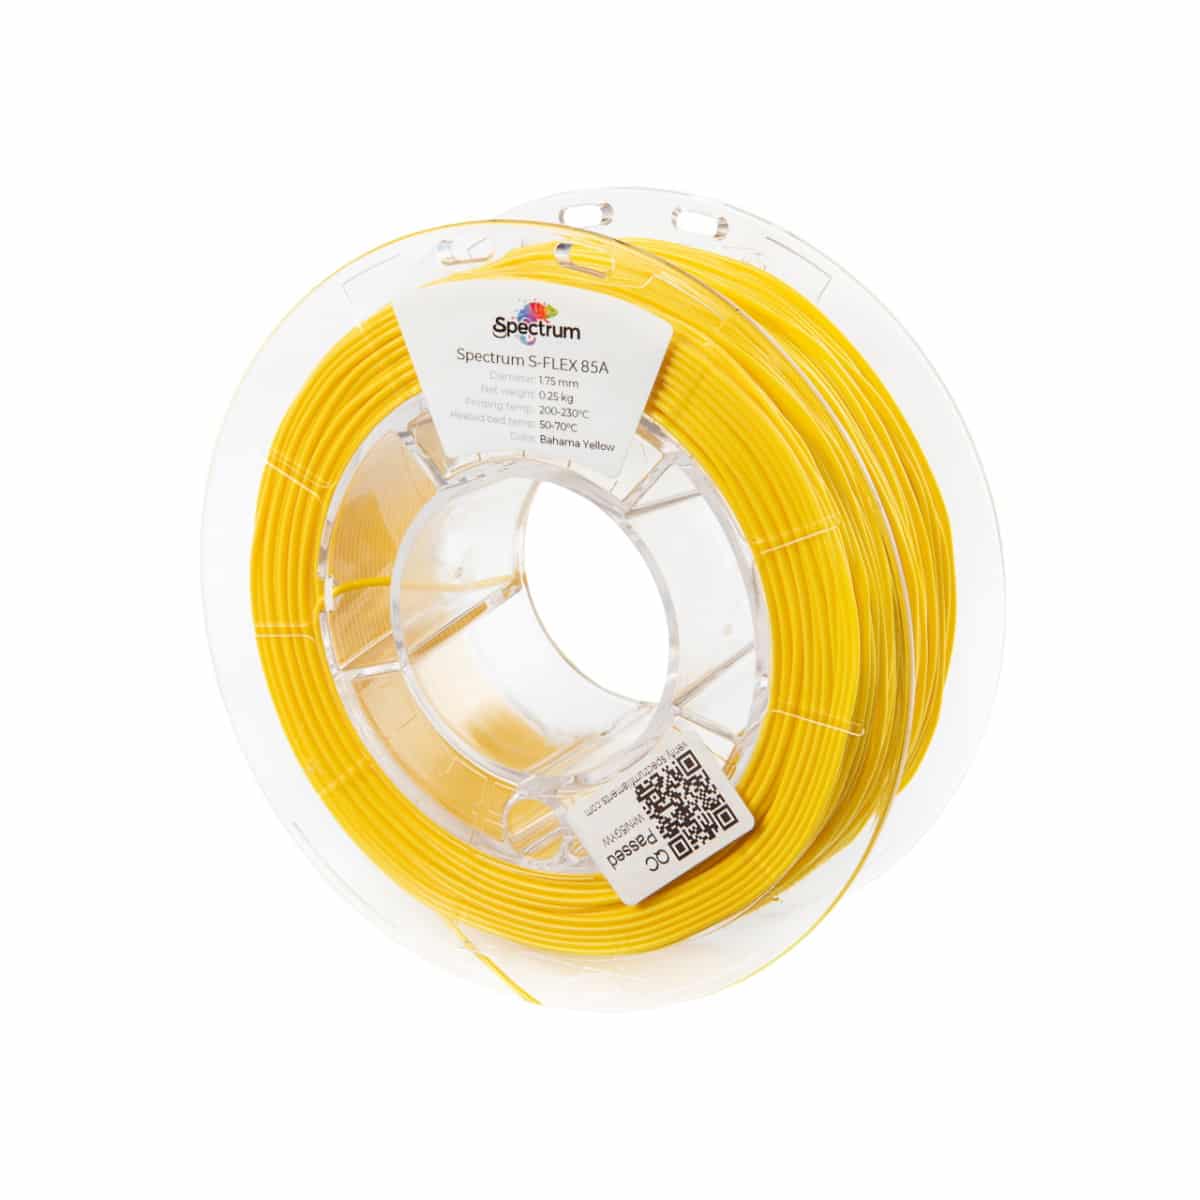 Køb Spectrum Filaments - S-Flex 85A - 1.75mm - Bahama Yellow - 0.25kg - Pris 130.00 kr.